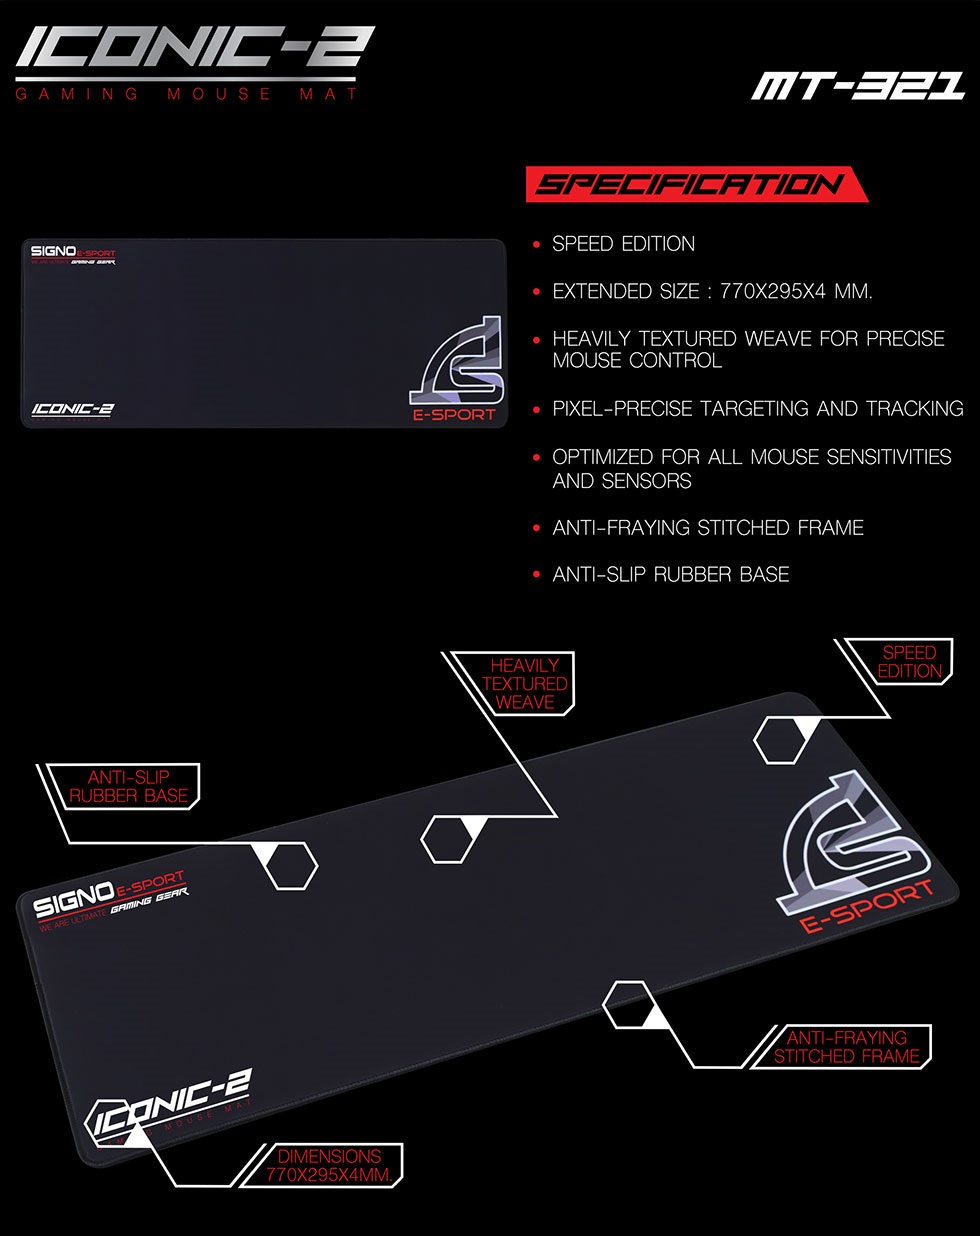 ภาพประกอบคำอธิบาย SIGNO E-Sport ICONIC-2 Gaming Mouse Mat รุ่น MT-321 Speed Edition แผ่นรองเมาส์ เกมส์มิ่ง